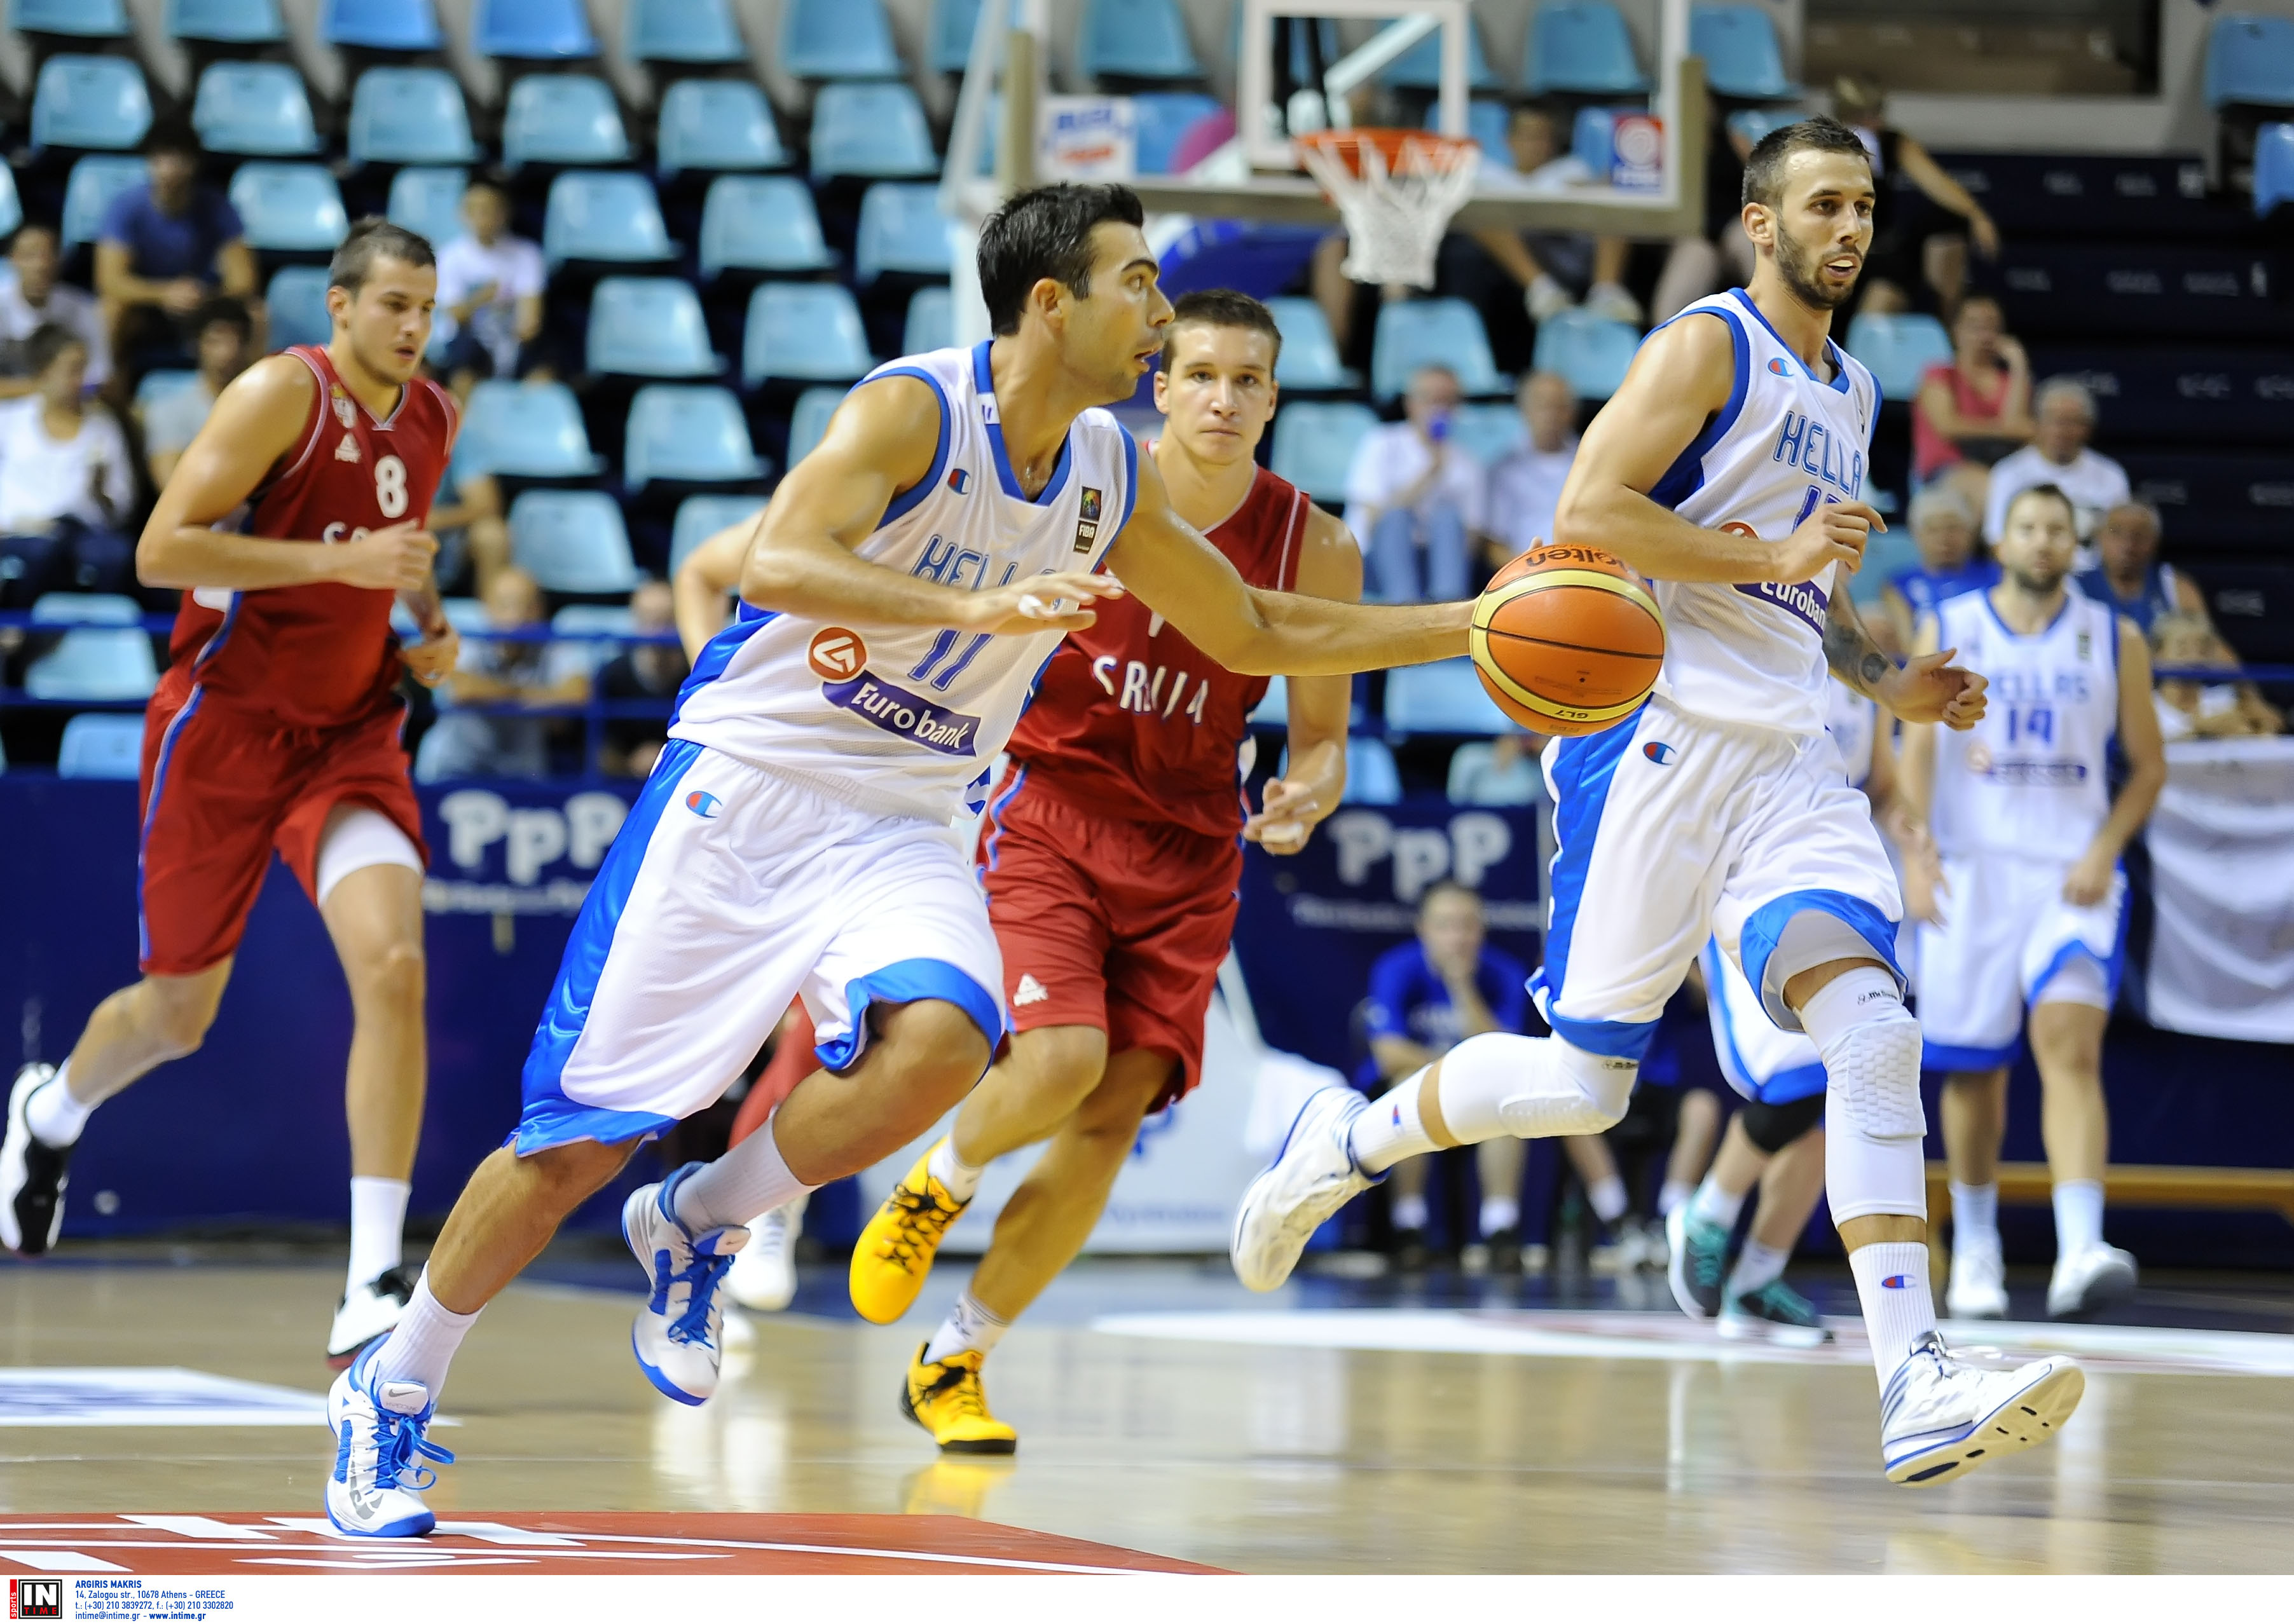 Μπάσκετ: Ελλάδα – Σερβία 66 – 64 σε φιλικό αγώνα προετοιμασίας